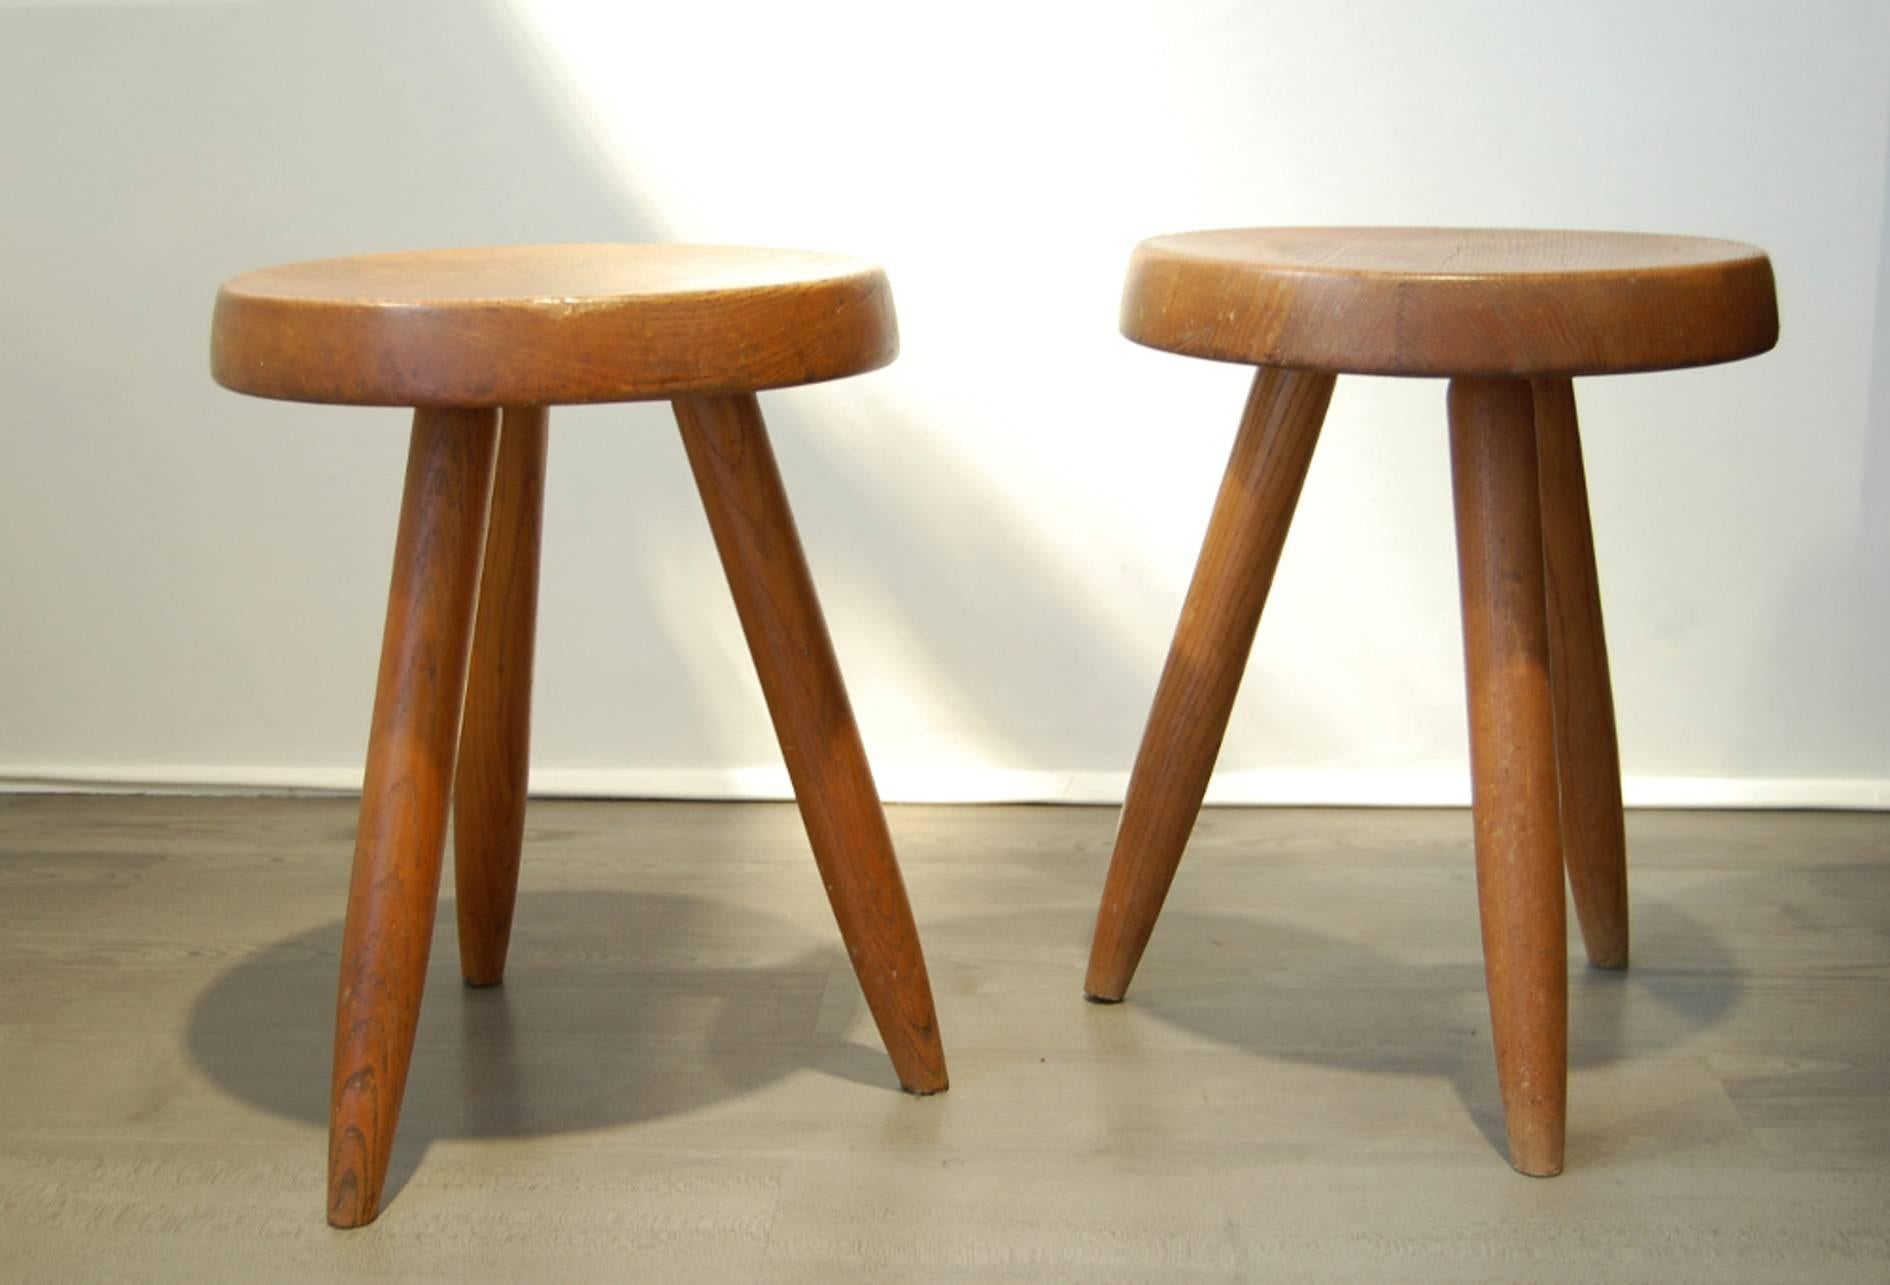 Pair of mahogany, tripod stools. Circular base on tapered legs,
circa 1960.